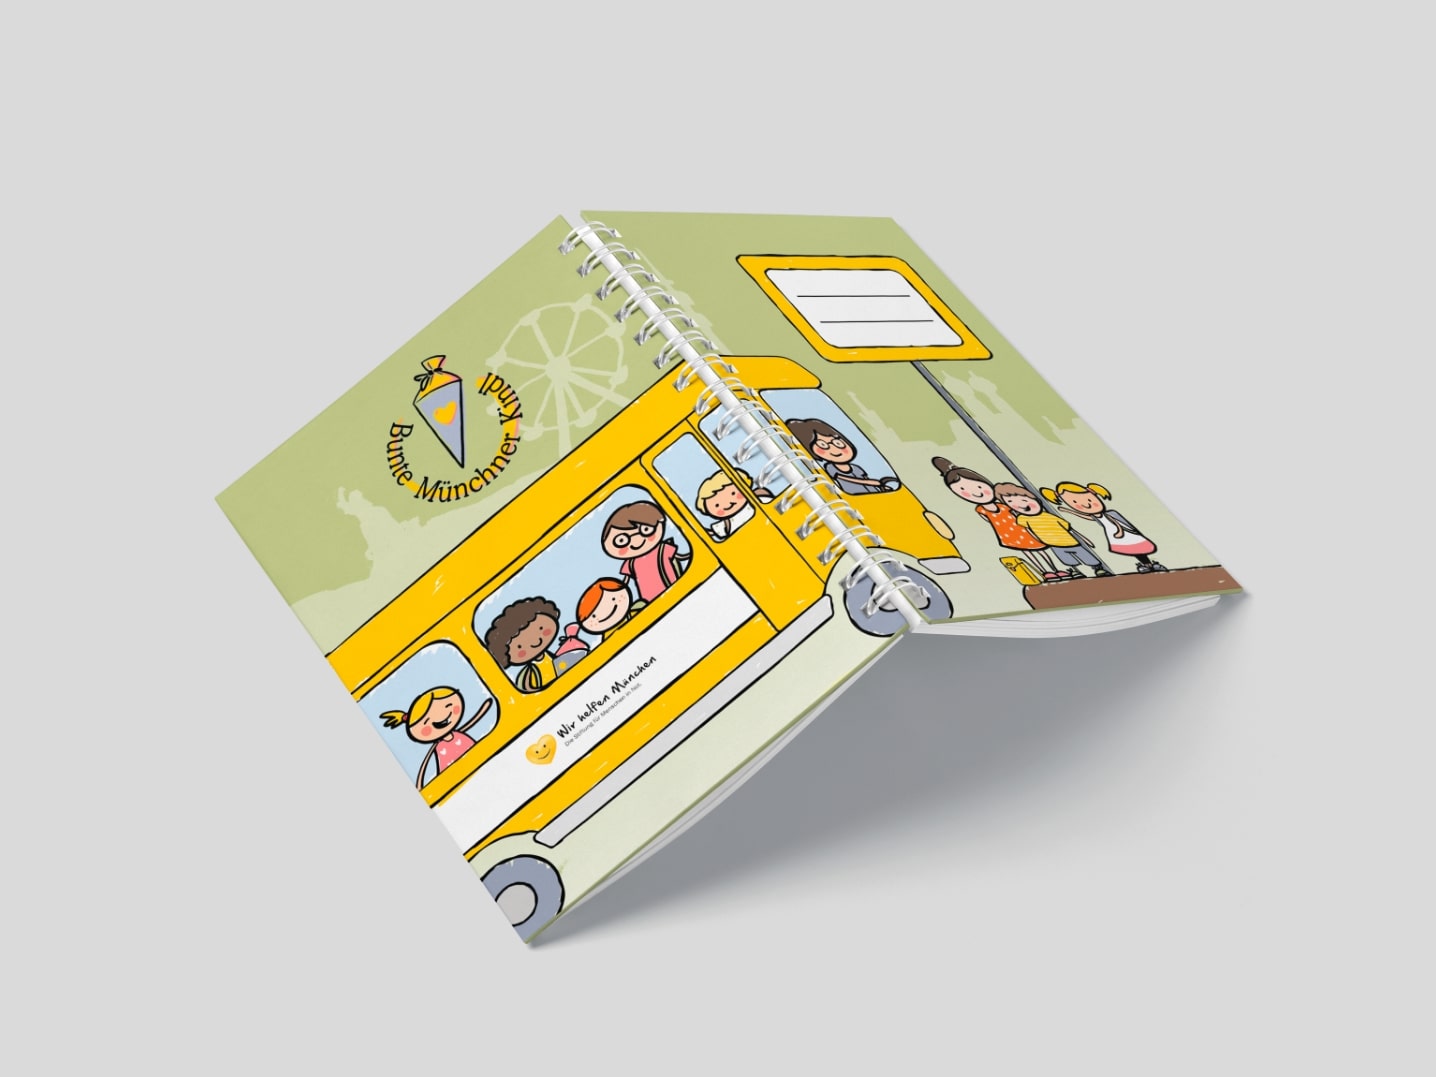 Mockup mit der Umschlagsdoppelseite des nachhaltigen Hausaufgabenheft Bunte Münchner Kindl München, auf dem Umschlag ist ein großer gelber Bus und Kinder illustriert, auf hellgrünem Hintergrund, mit Logo und Namensfeld auf Vorder-und Rückseite